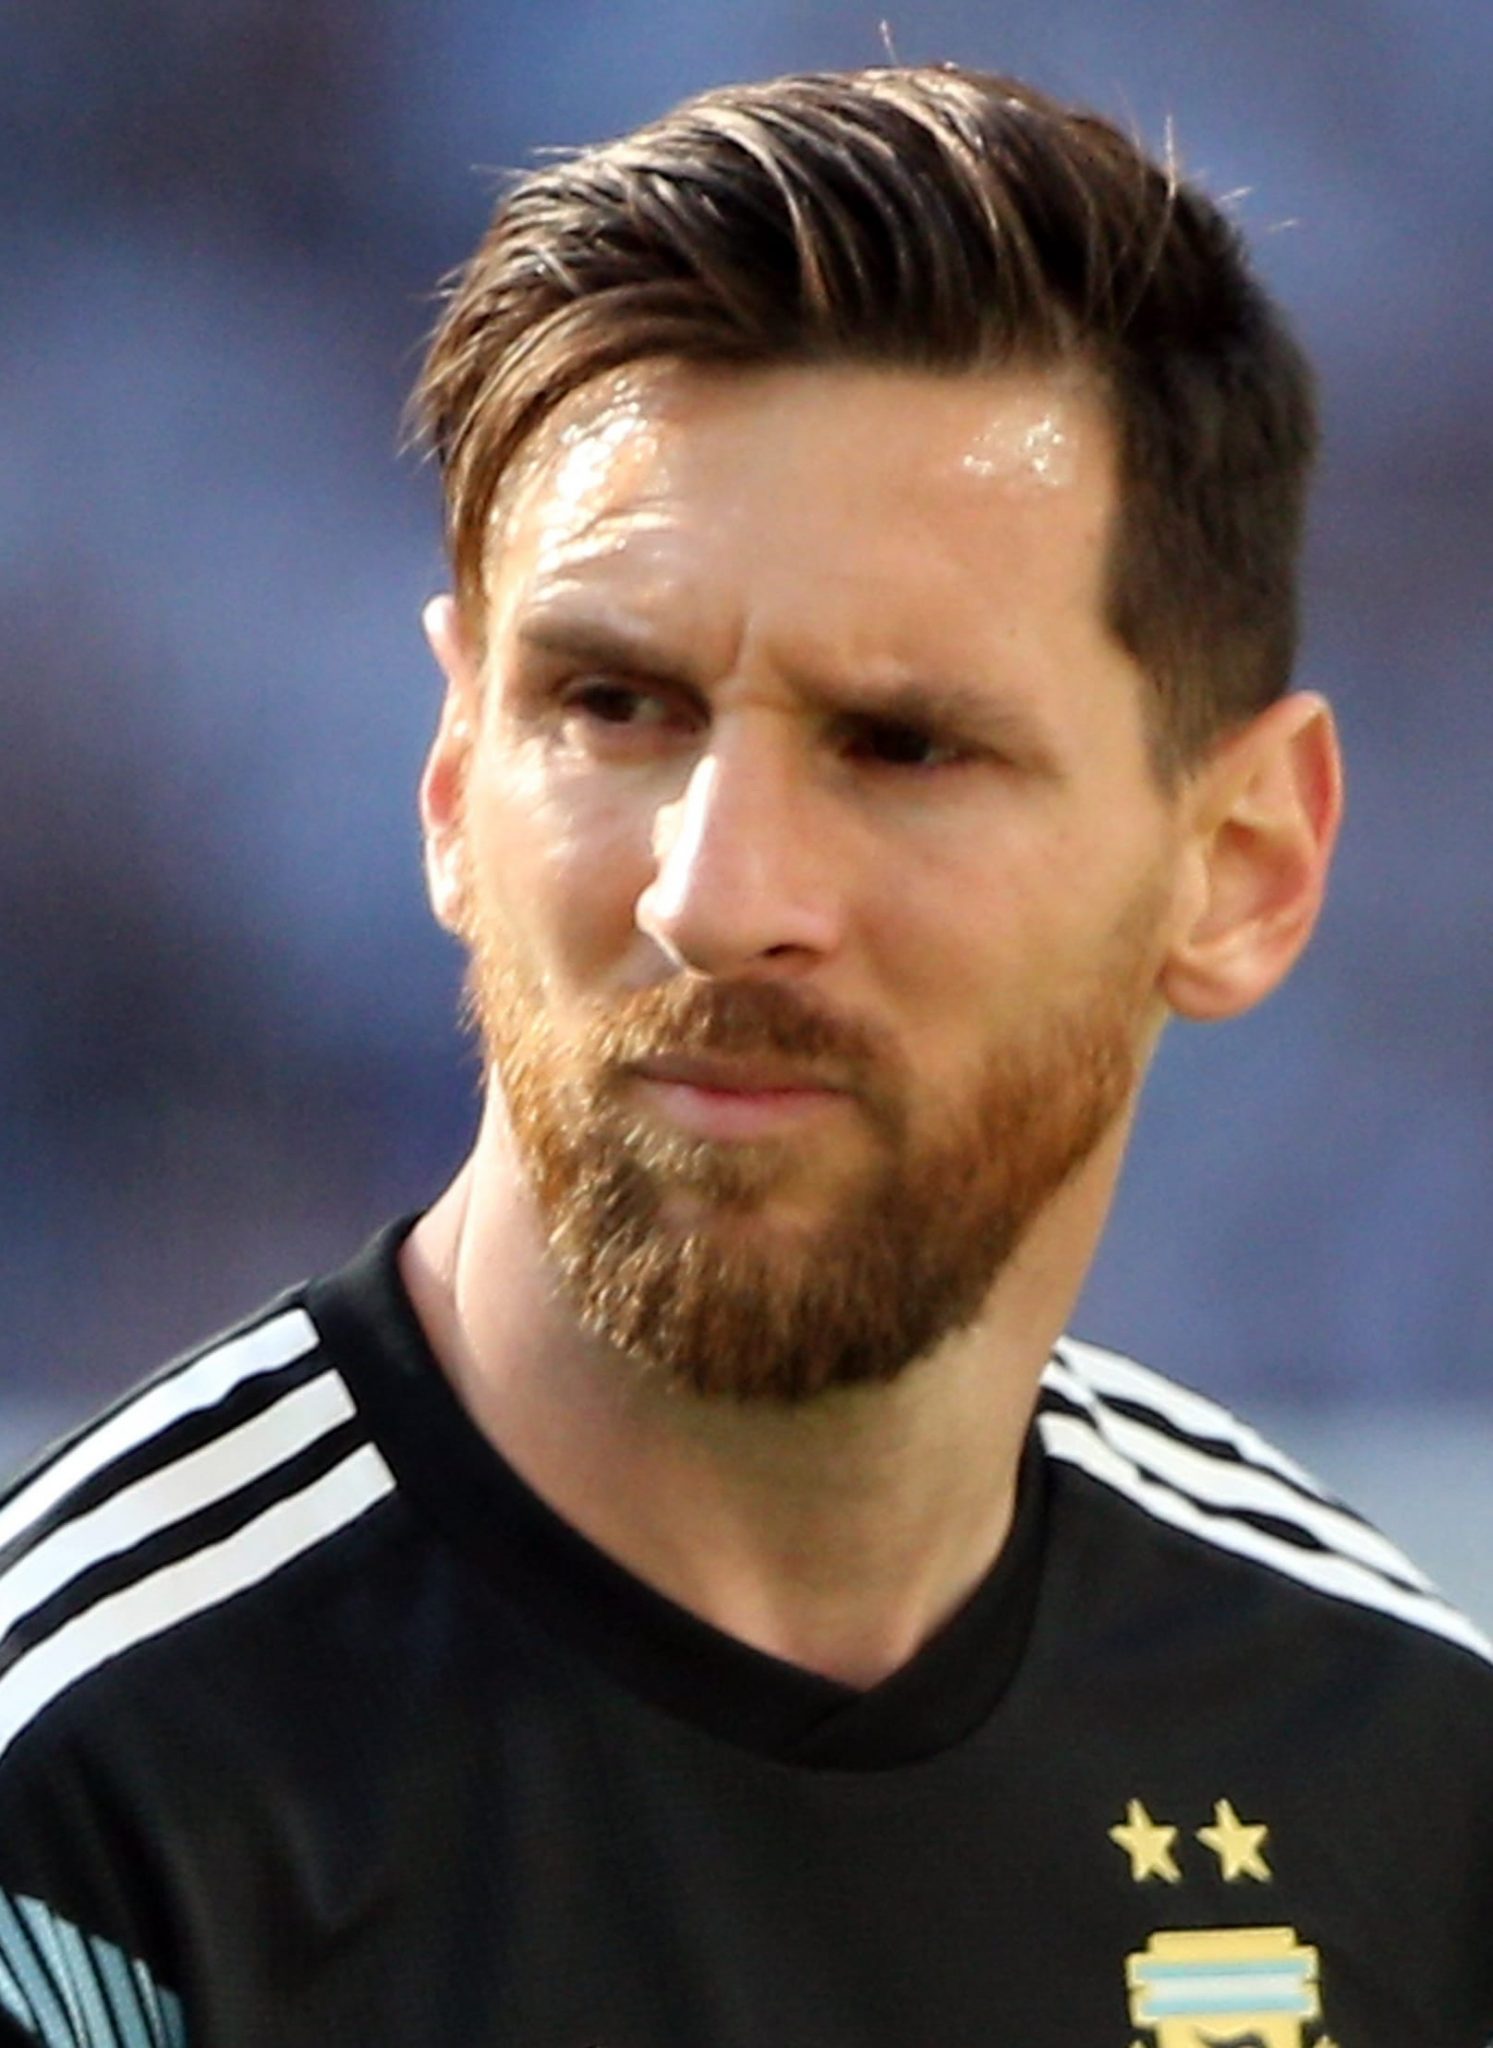 Lionel Messi memastikan Piala Dunia 2022 di Qatar akan jadi yang terakhir